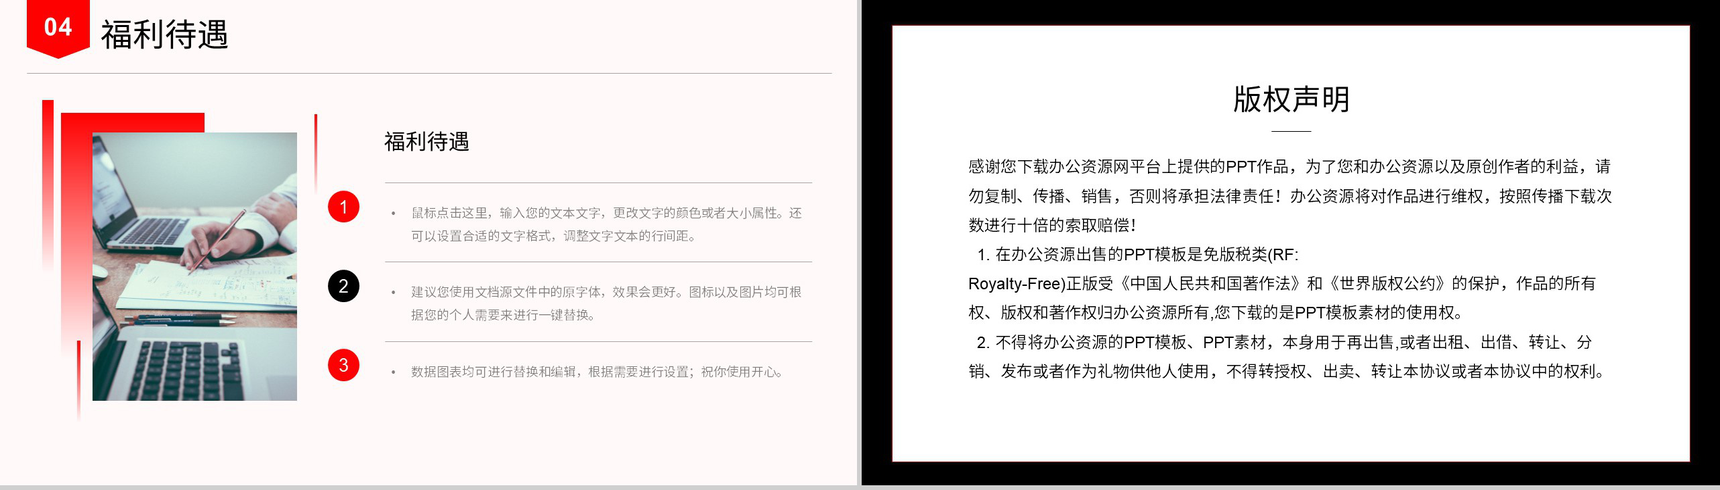 大气公司求贤企业校园招聘计划实施项目总结汇报PPT模板-10